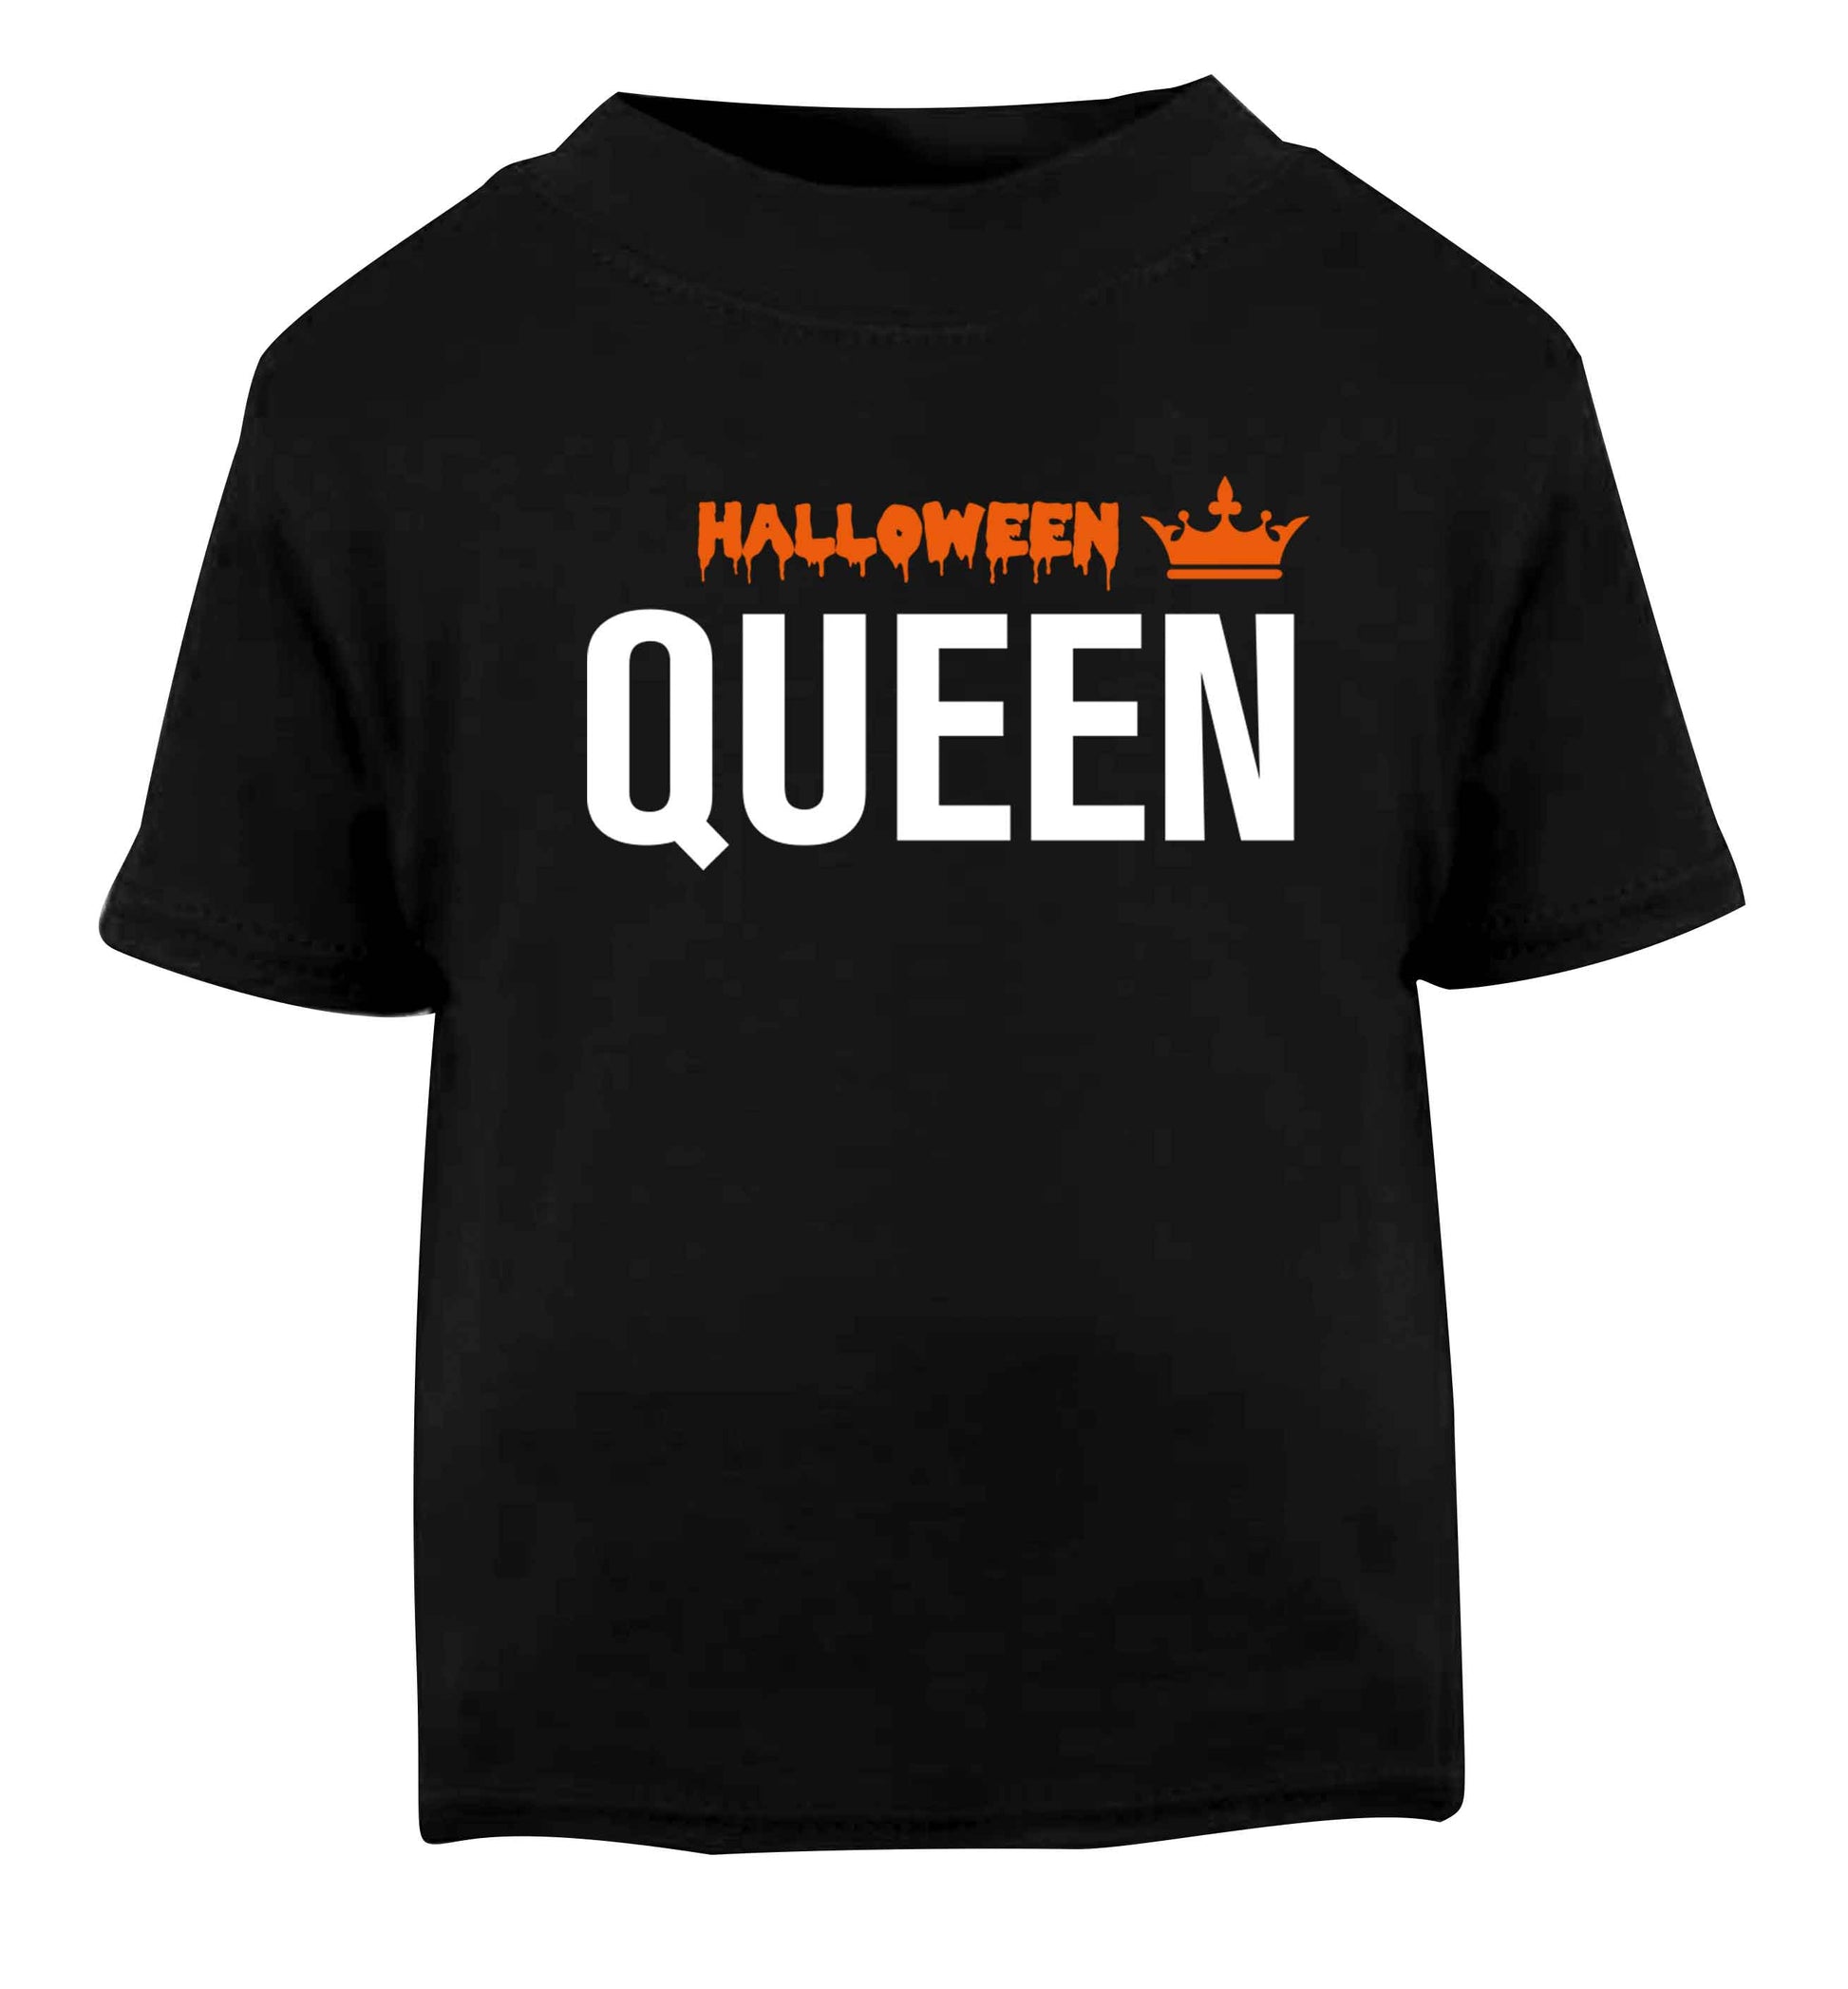 Halloween queen Black baby toddler Tshirt 2 years